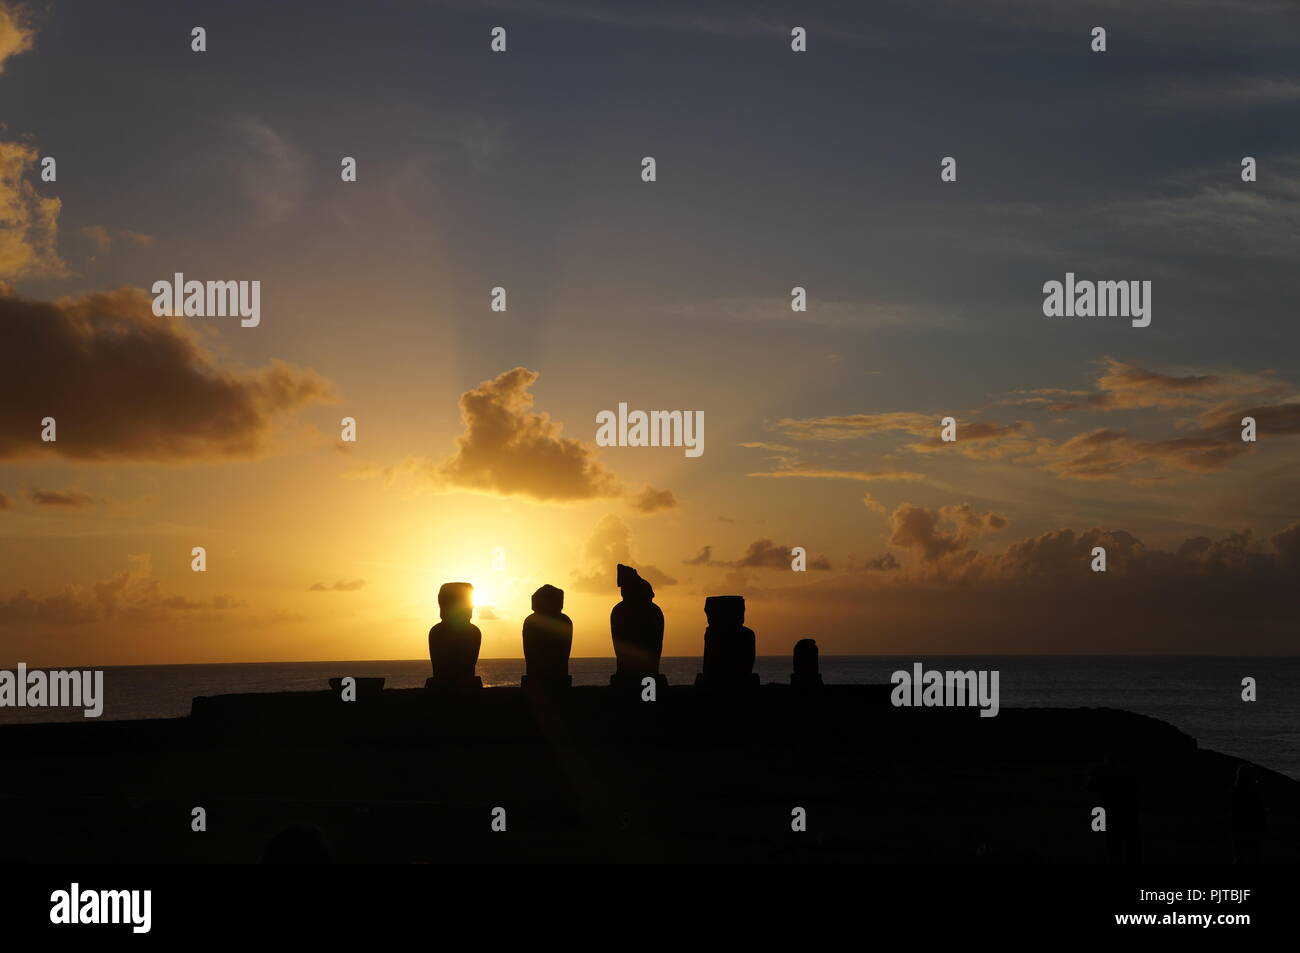 Sunset over the Moai heads at Ahu Tahai, Easter Island (Rapa Nui), Chile Stock Photo